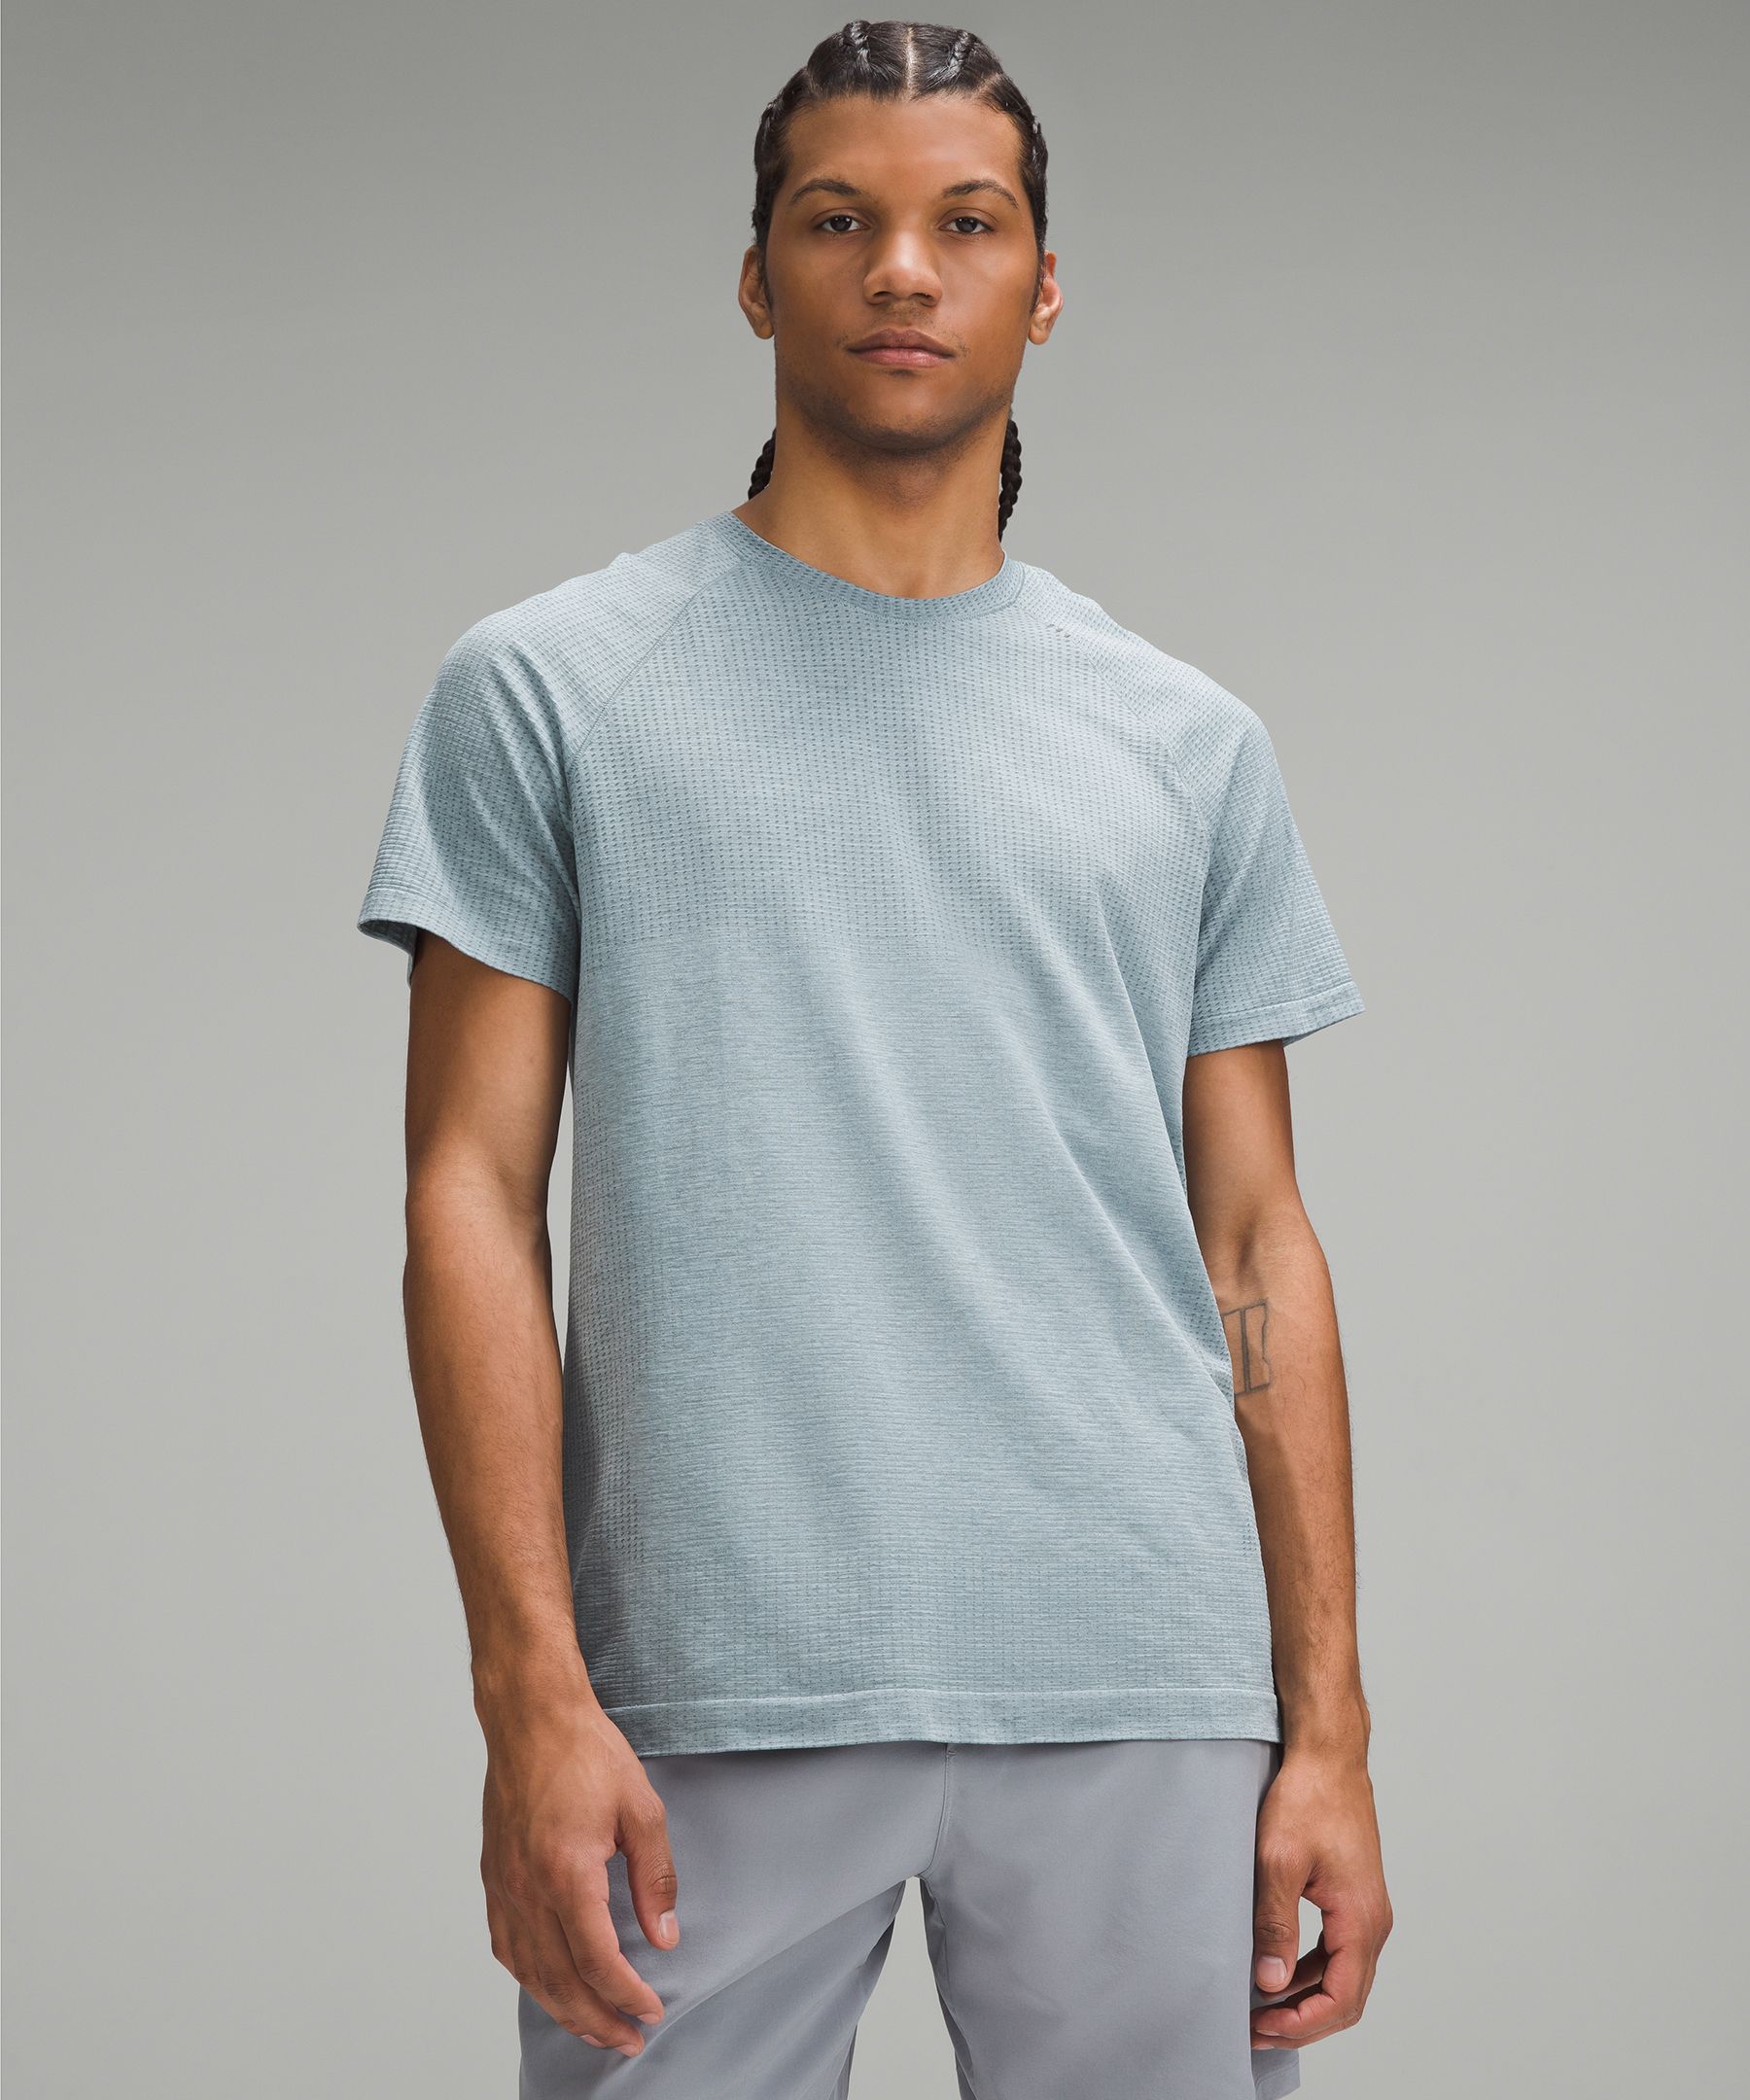 Metal Vent Tech Short-Sleeve Shirt 2.0 | Men's Short Sleeve Shirts & Tee's